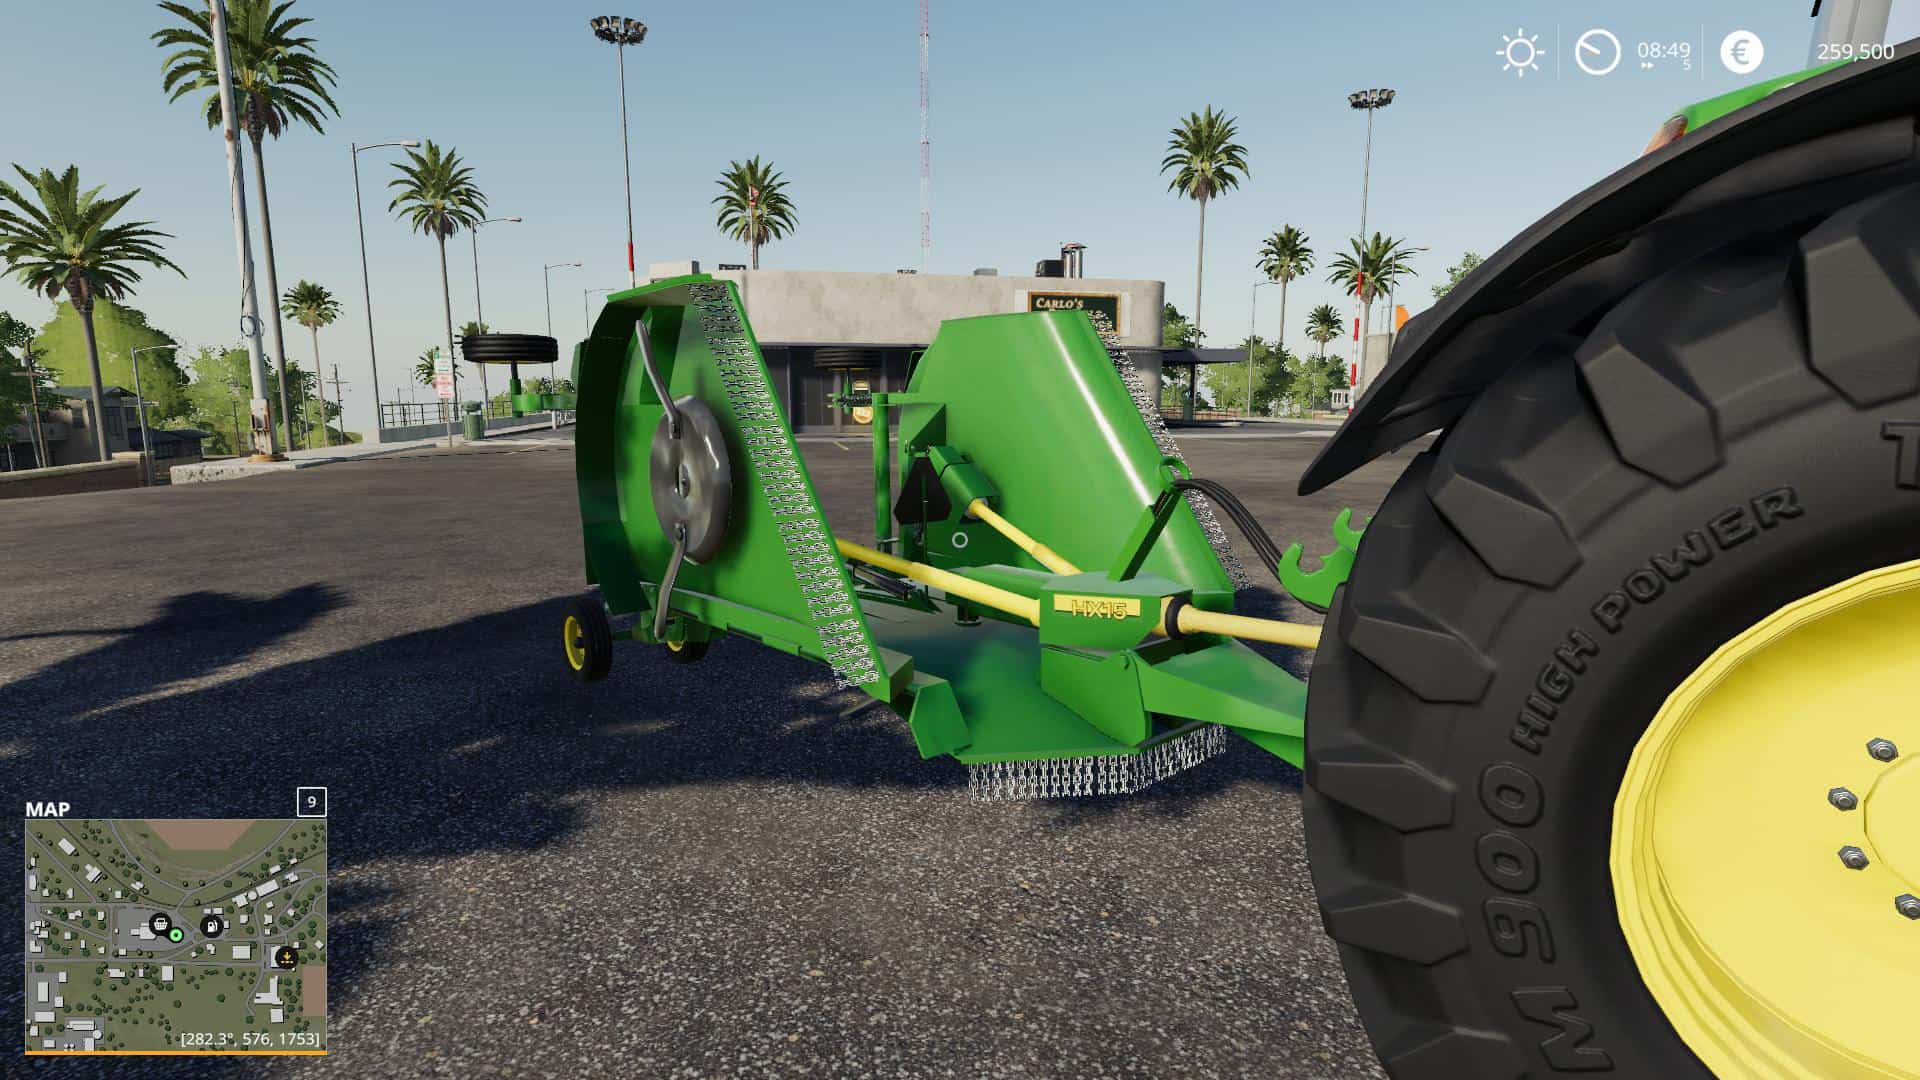 modhub farming simulator